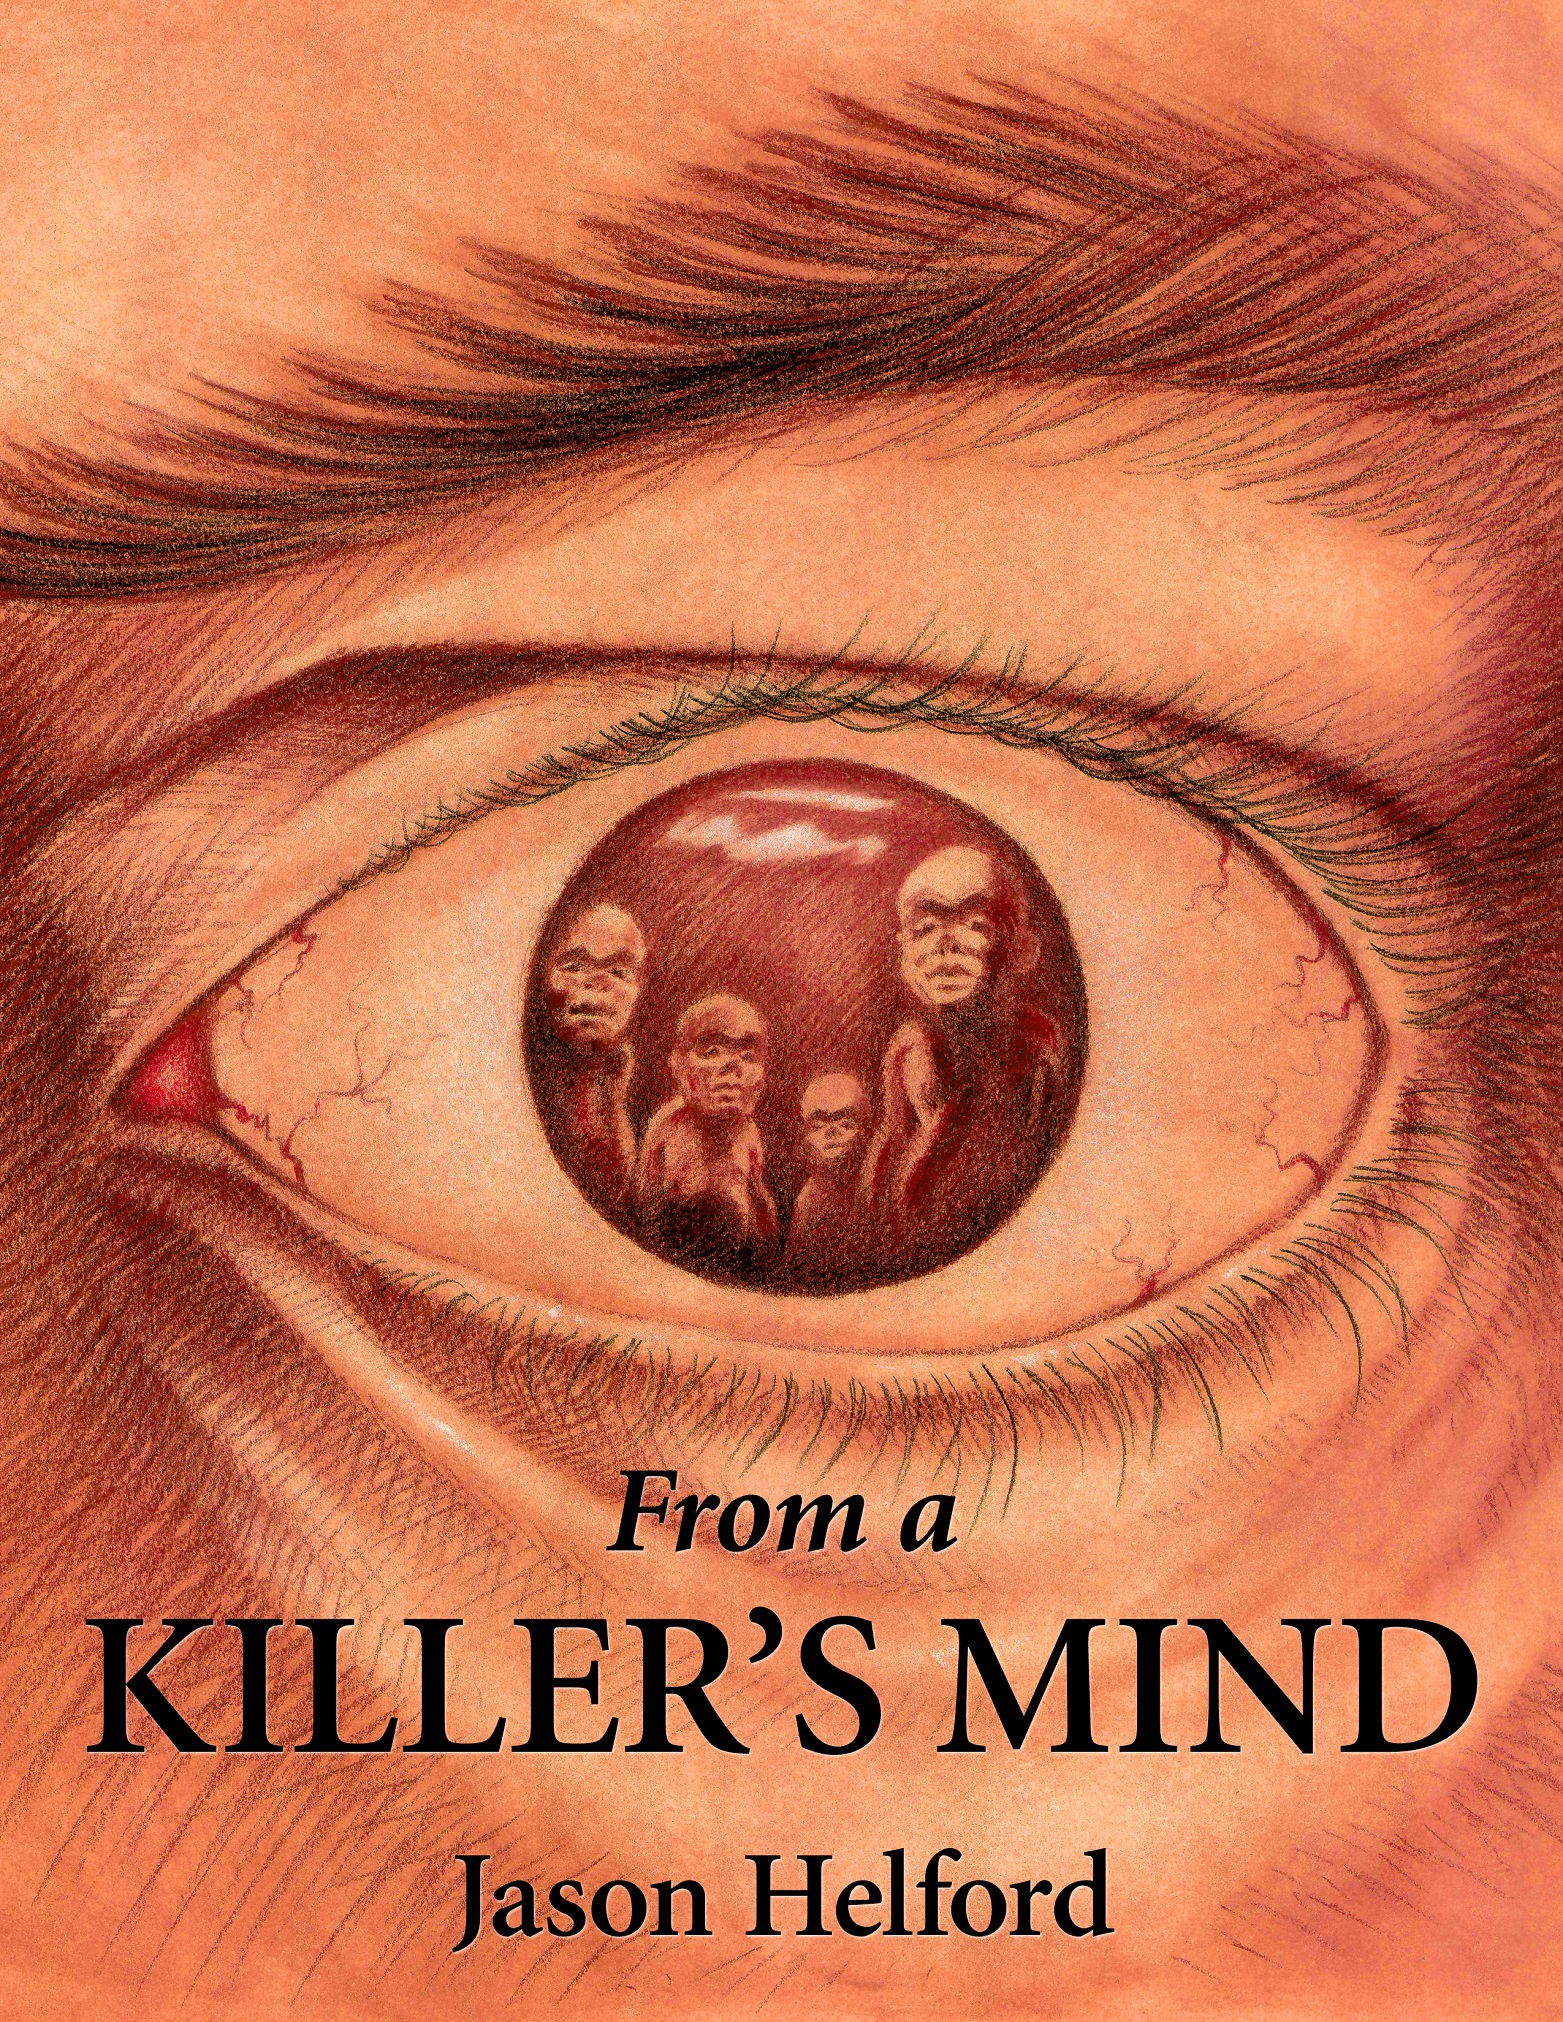 A killers mind